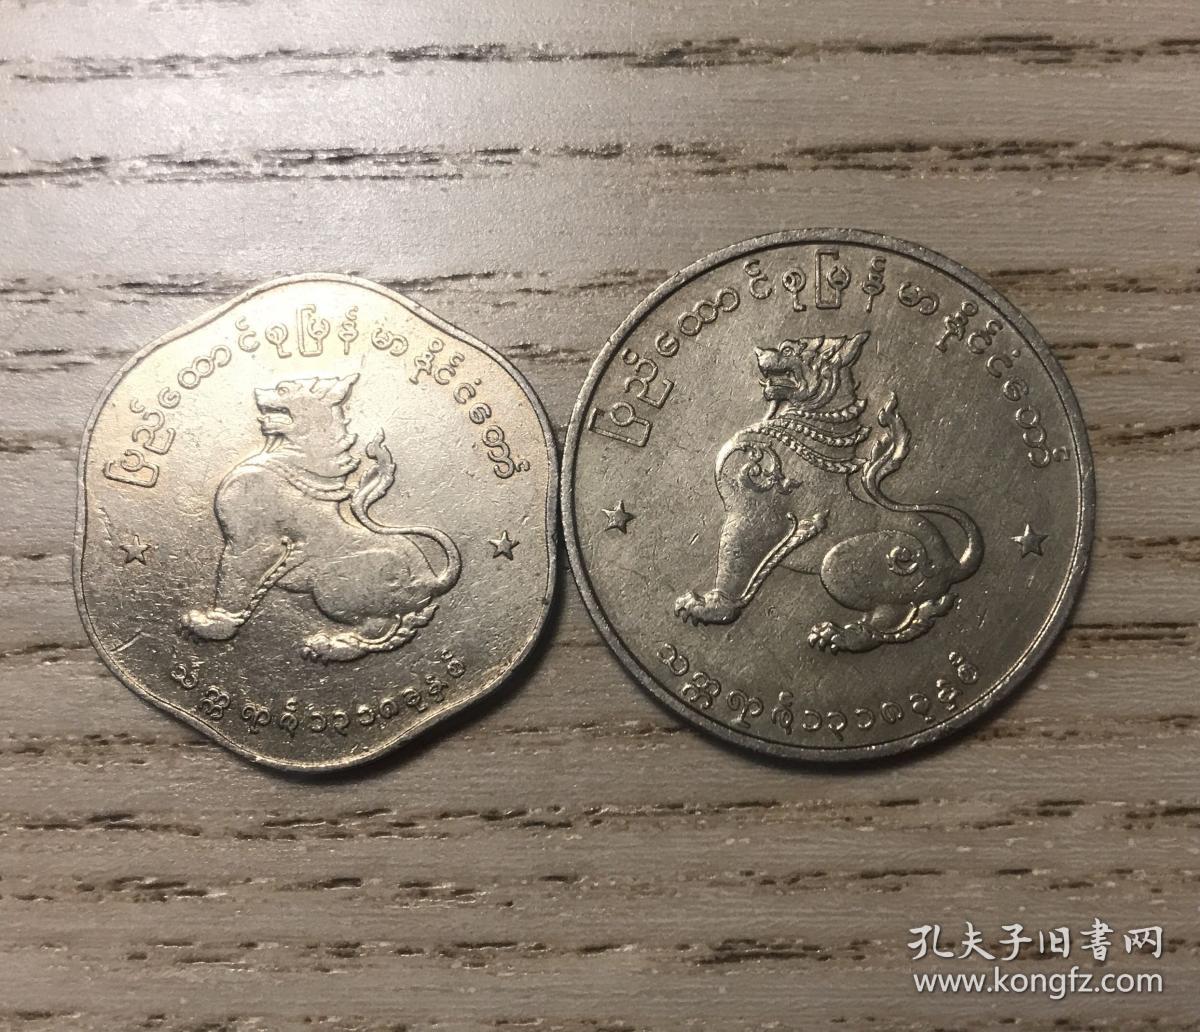 缅甸硬币,坦桑尼亚硬币 - 伤感说说吧